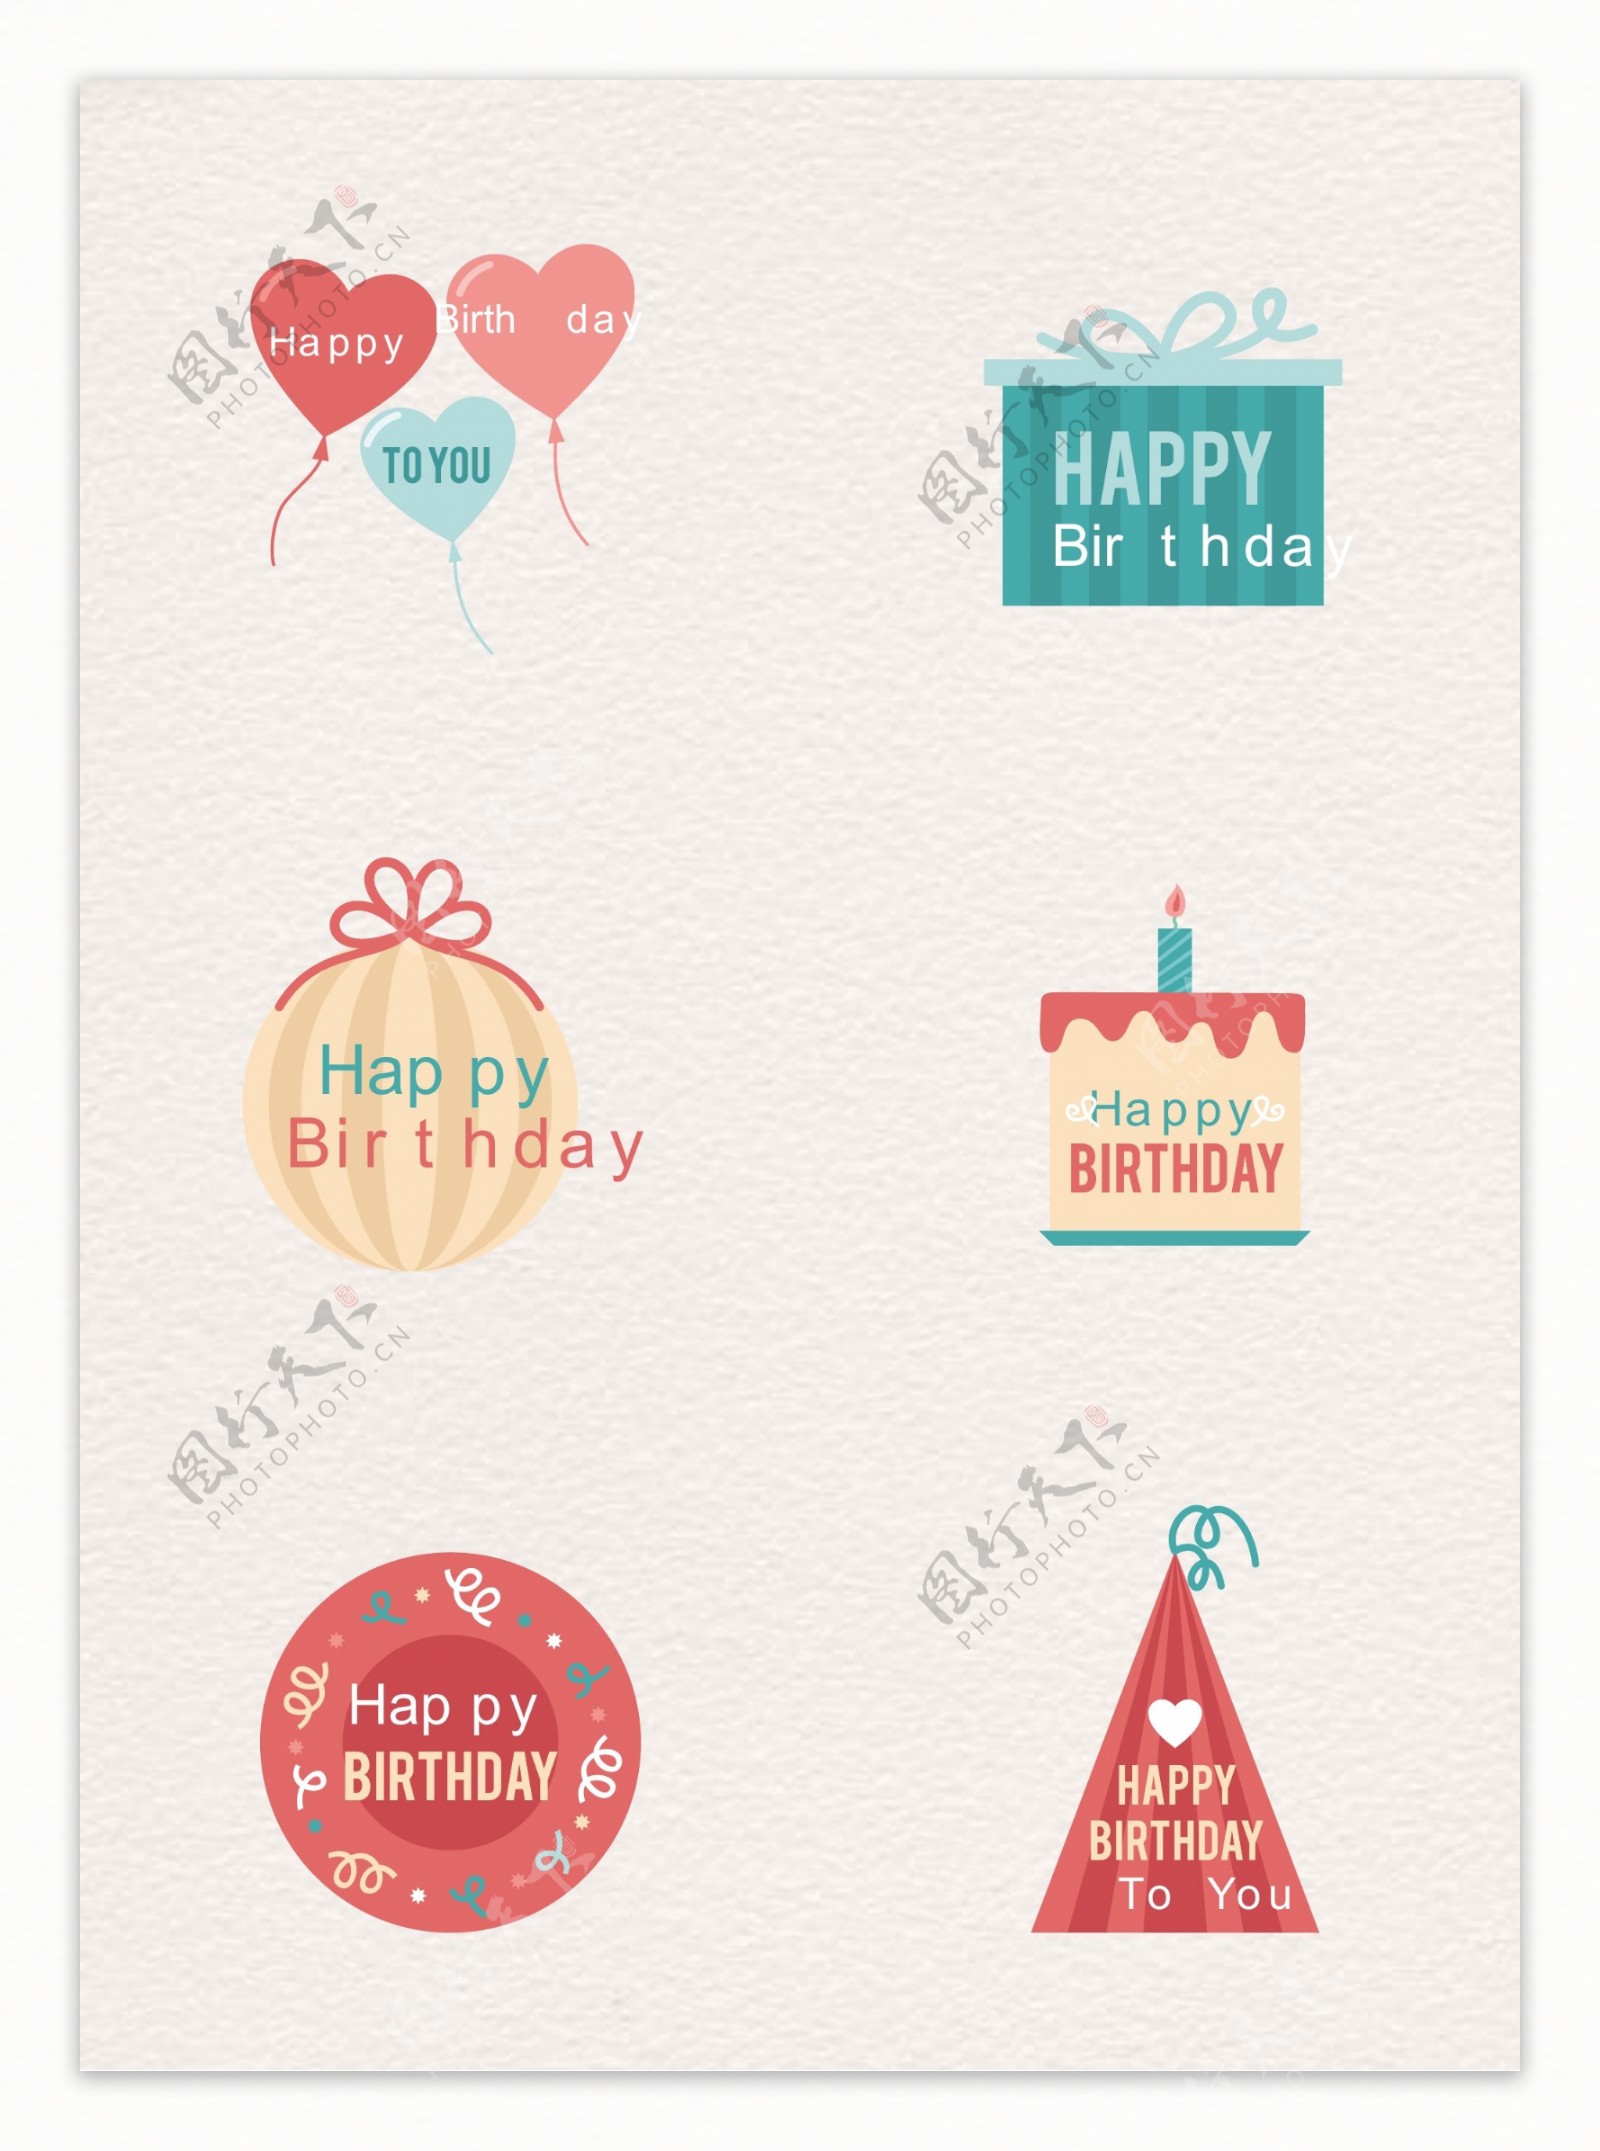 6款彩色生日快乐标签矢量素材